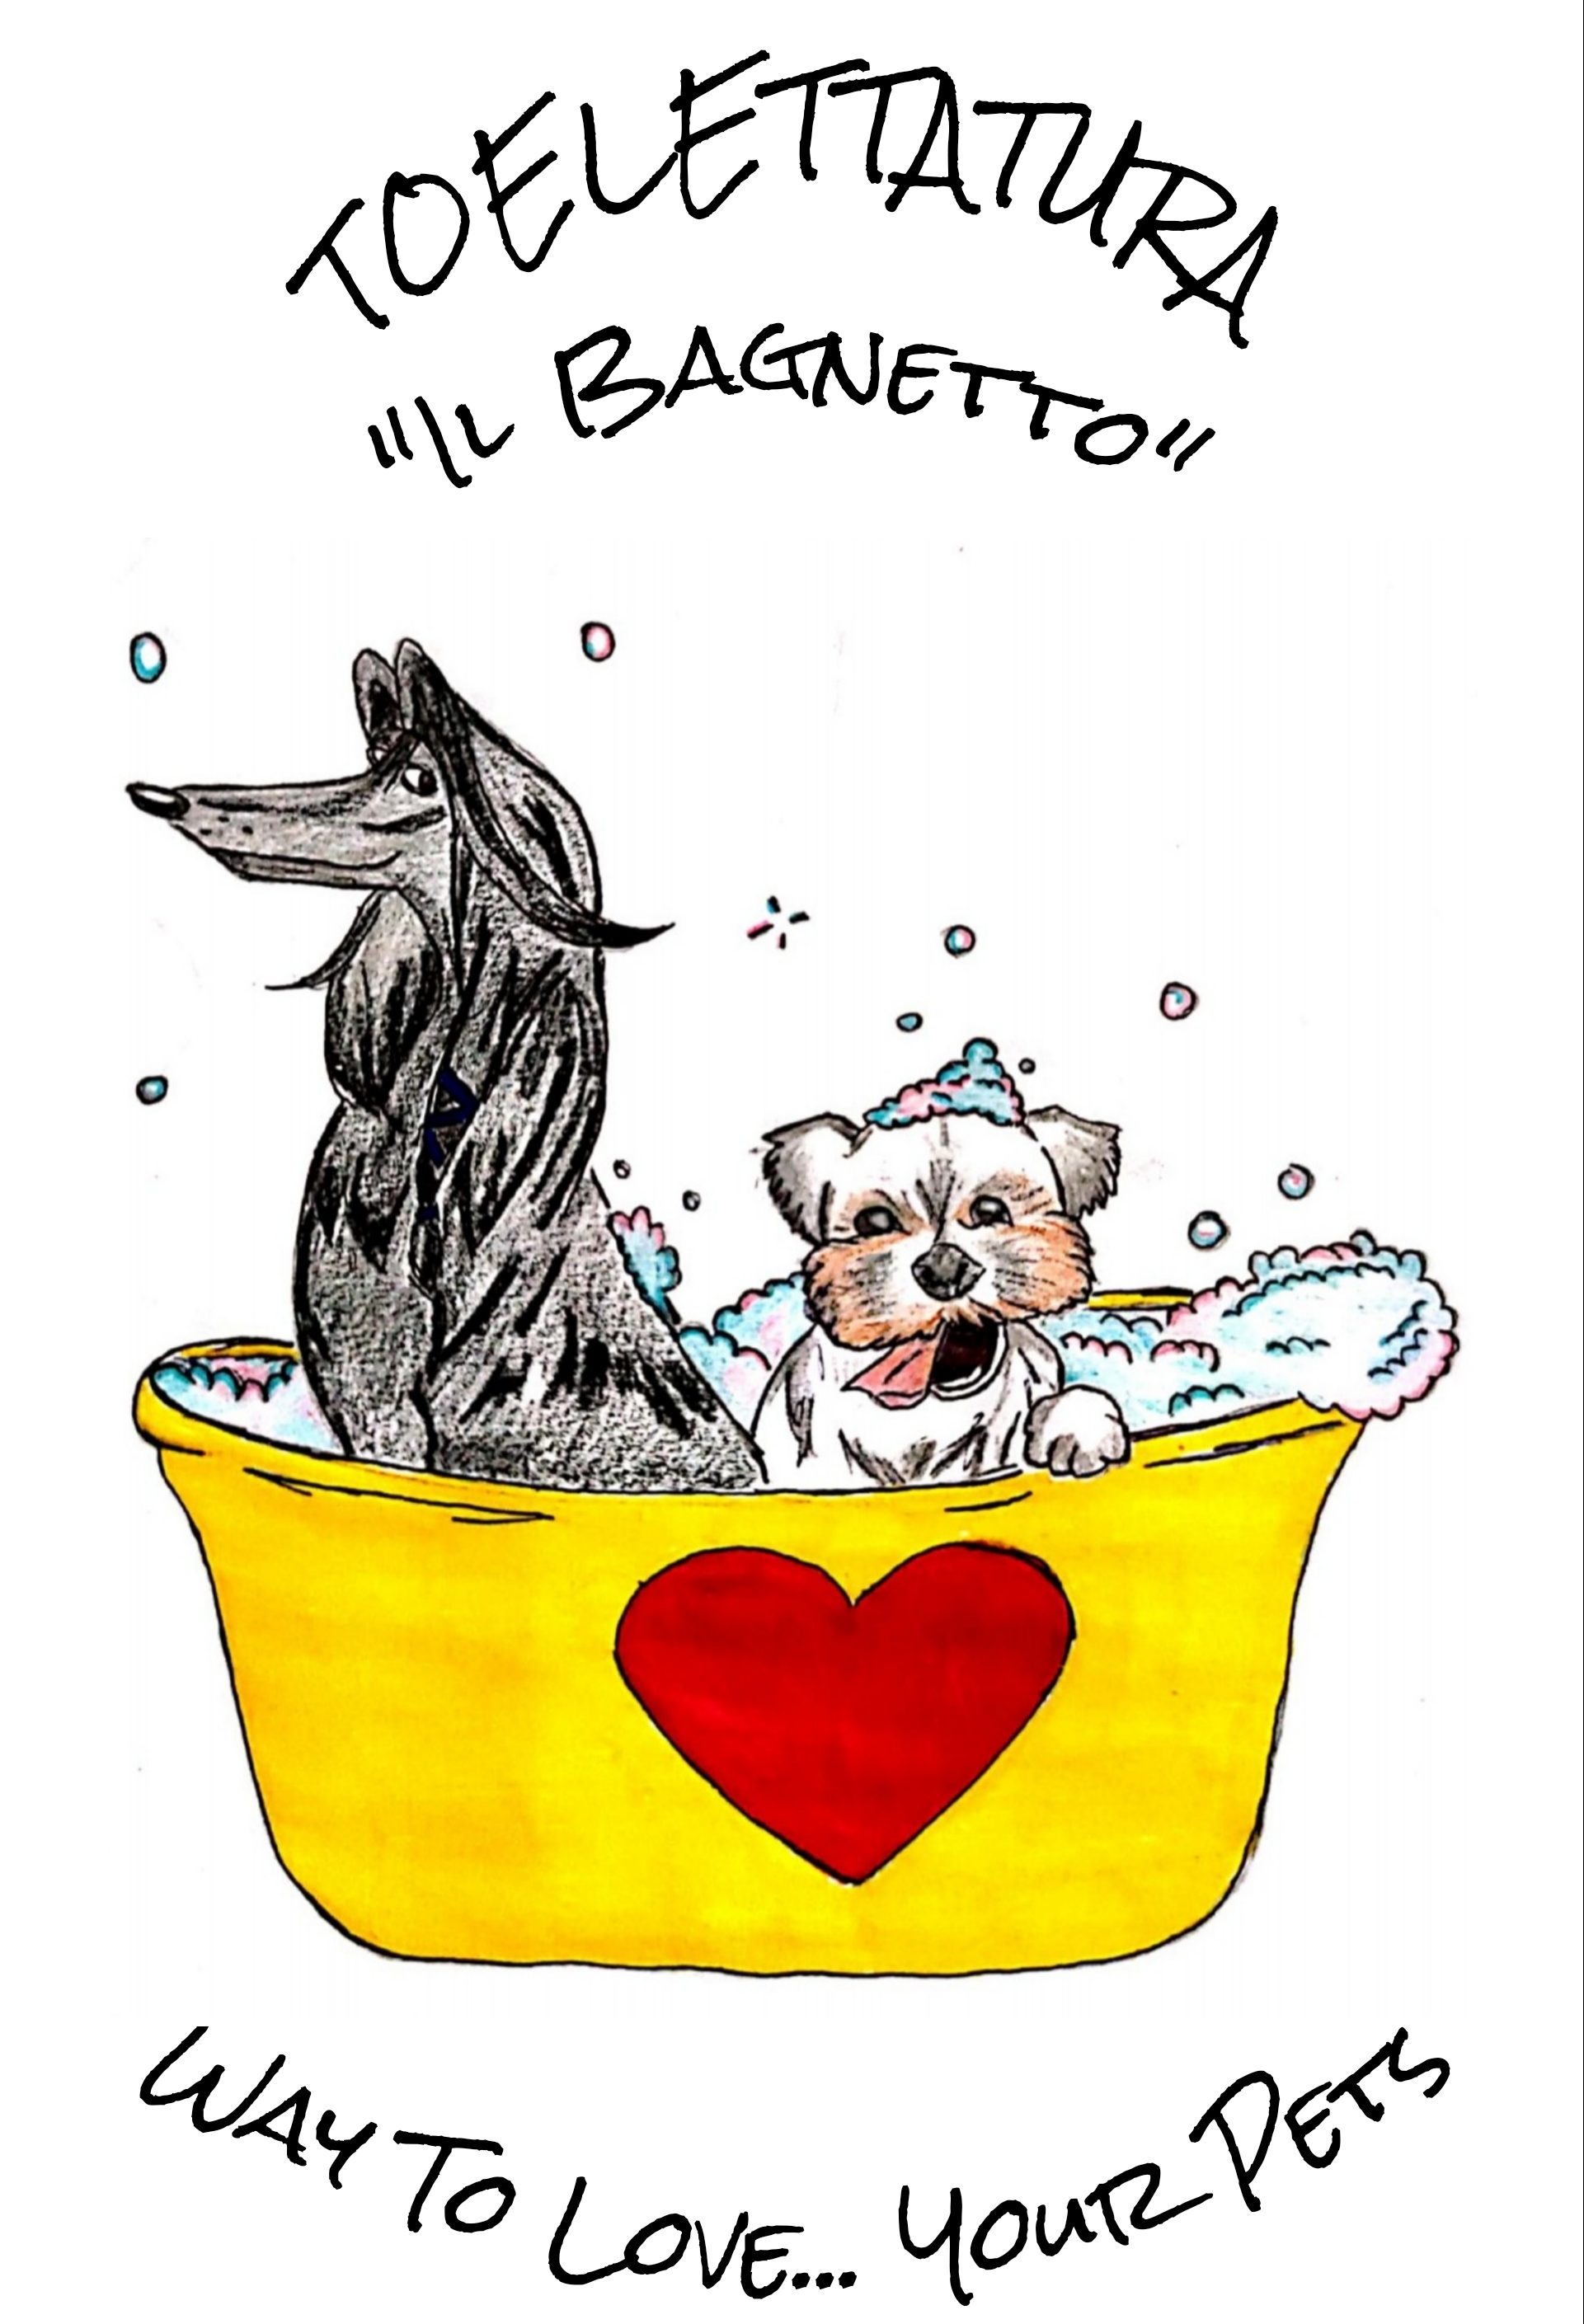 Toelettatura 'Il Bagnetto' WAY TO LOVE your pets di Daiana e Marika